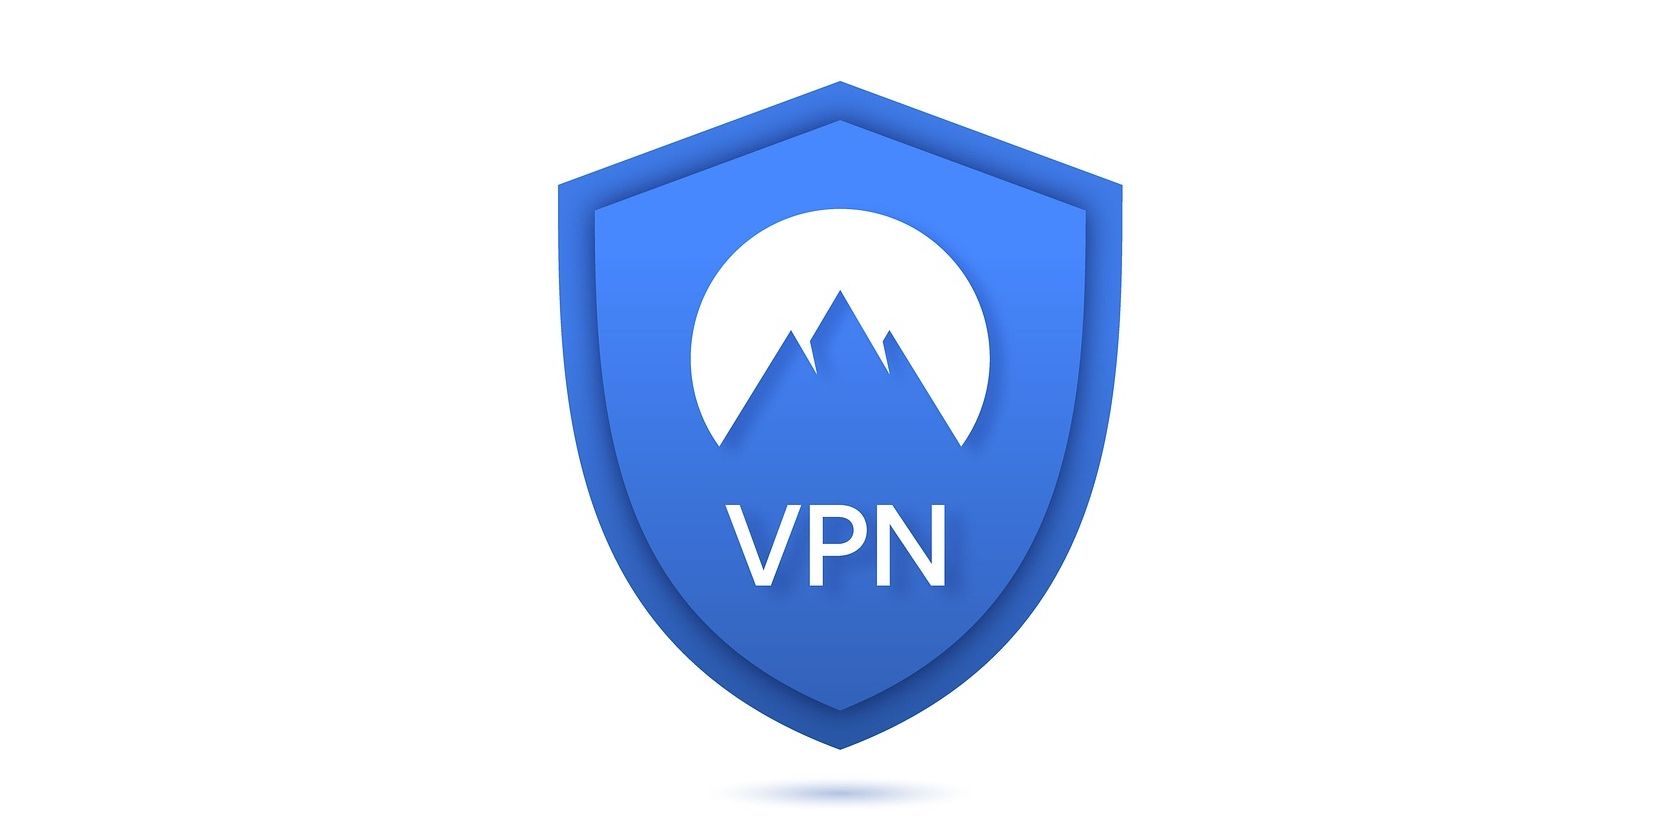 virtual private network shield